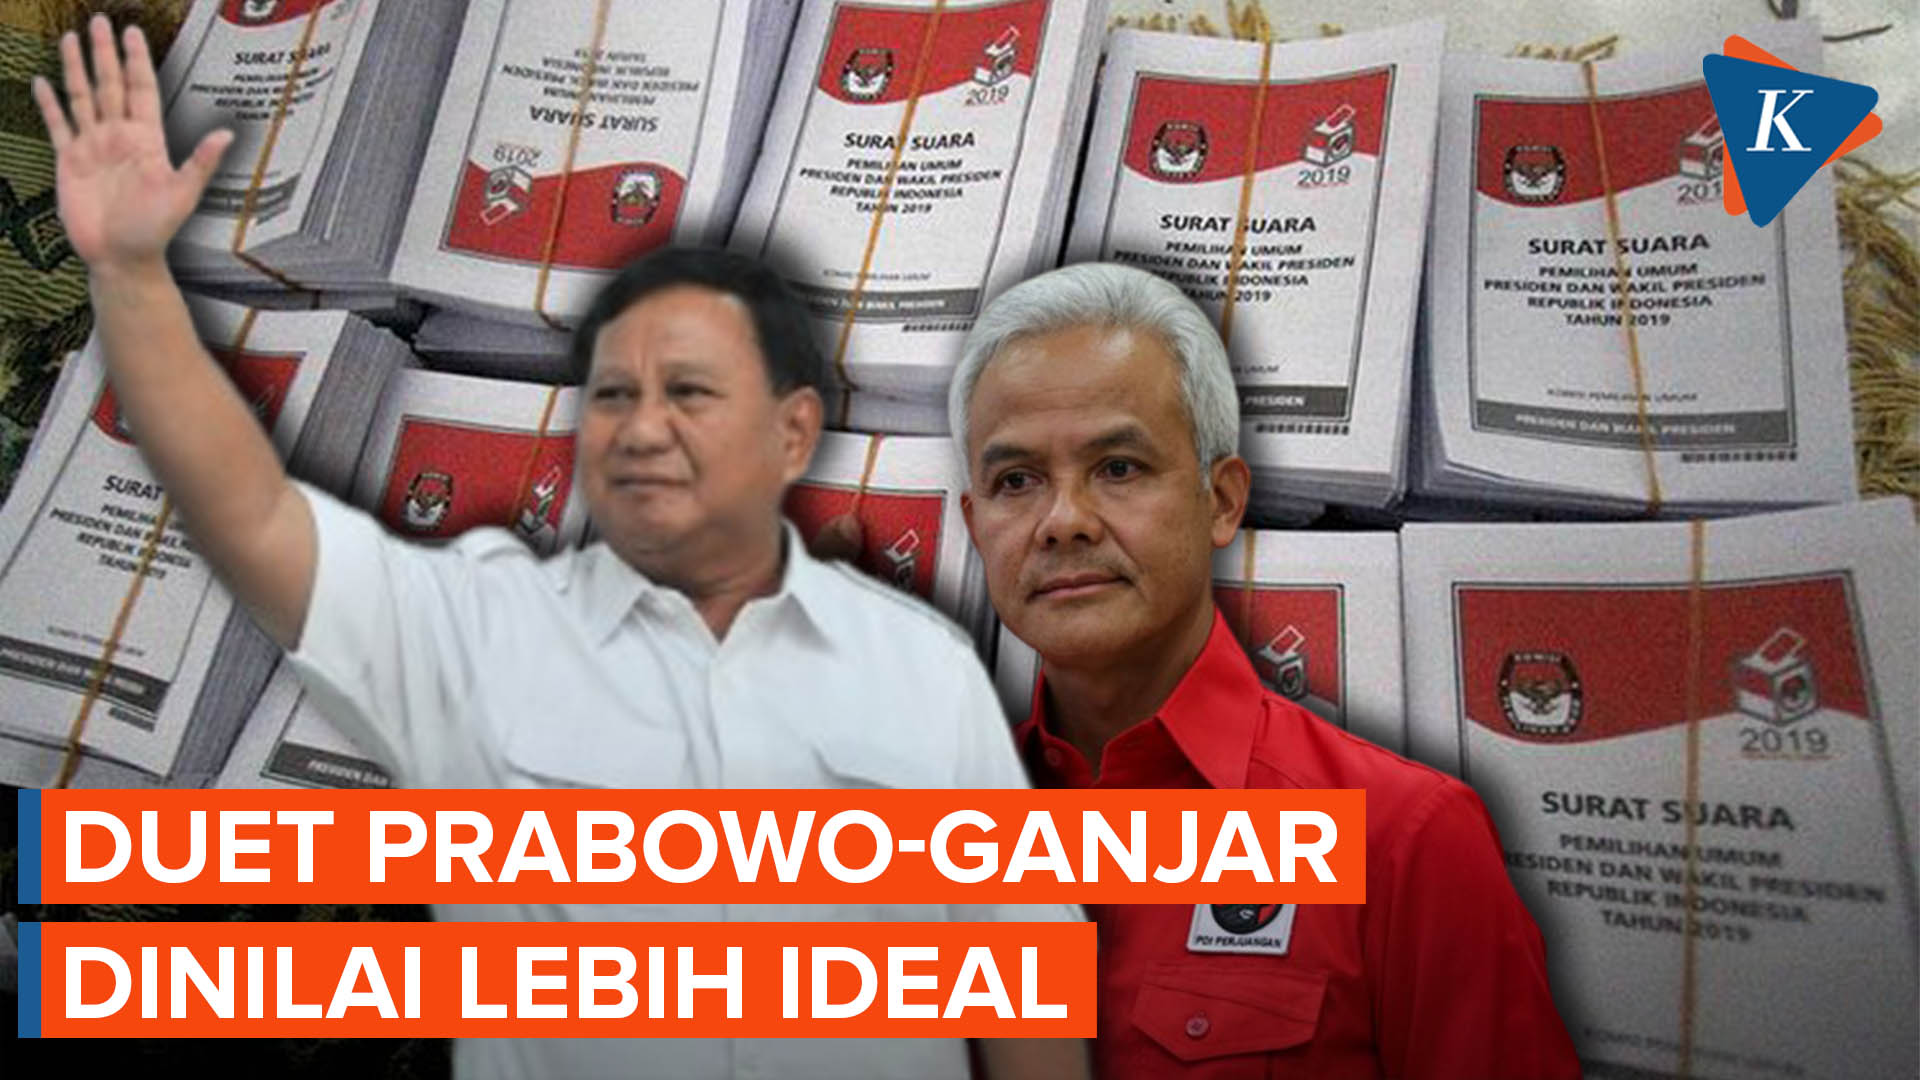 Wacana Duet Prabowo-Ganjar Dinilai Lebih Berpotensi Raih Kemenangan Besar